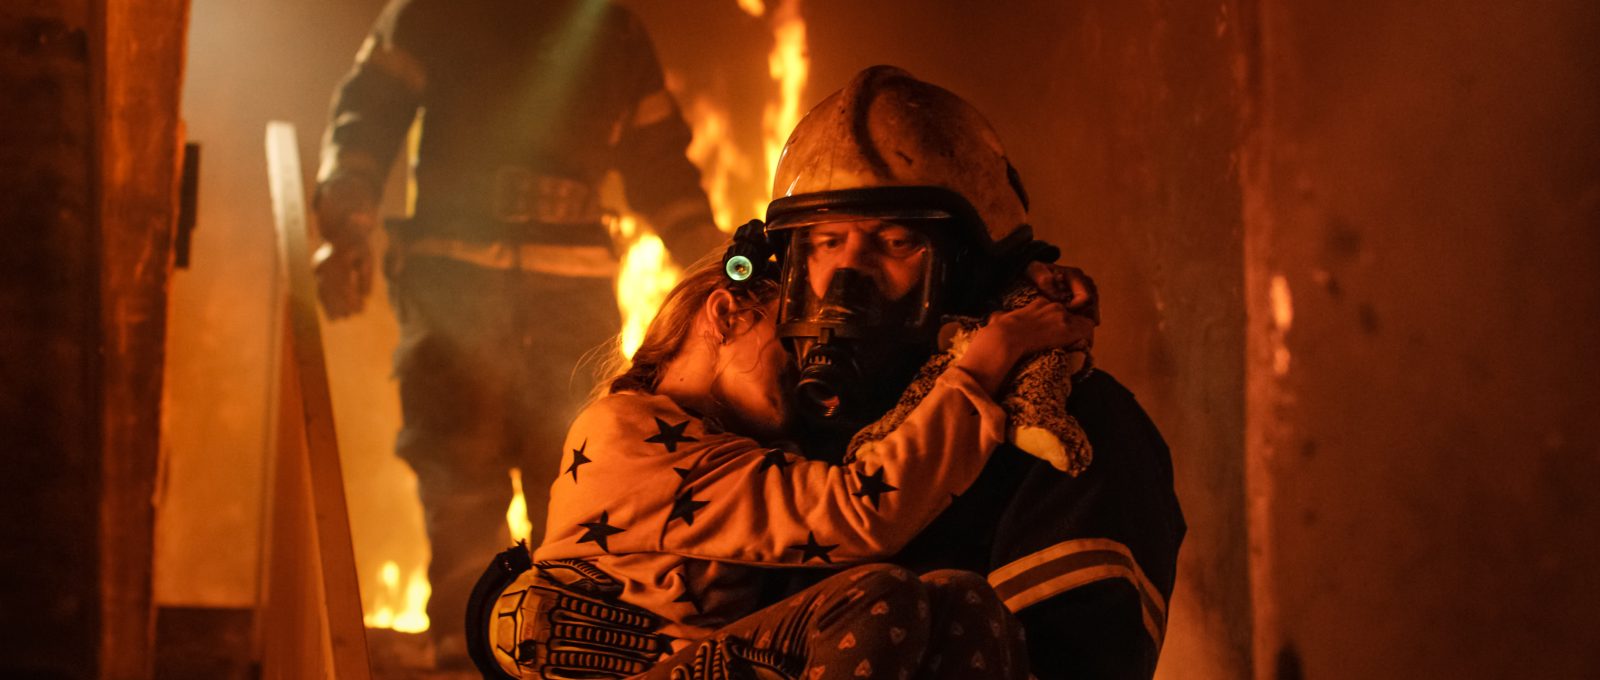 Rettung von Kind durch Feuerwehrleute